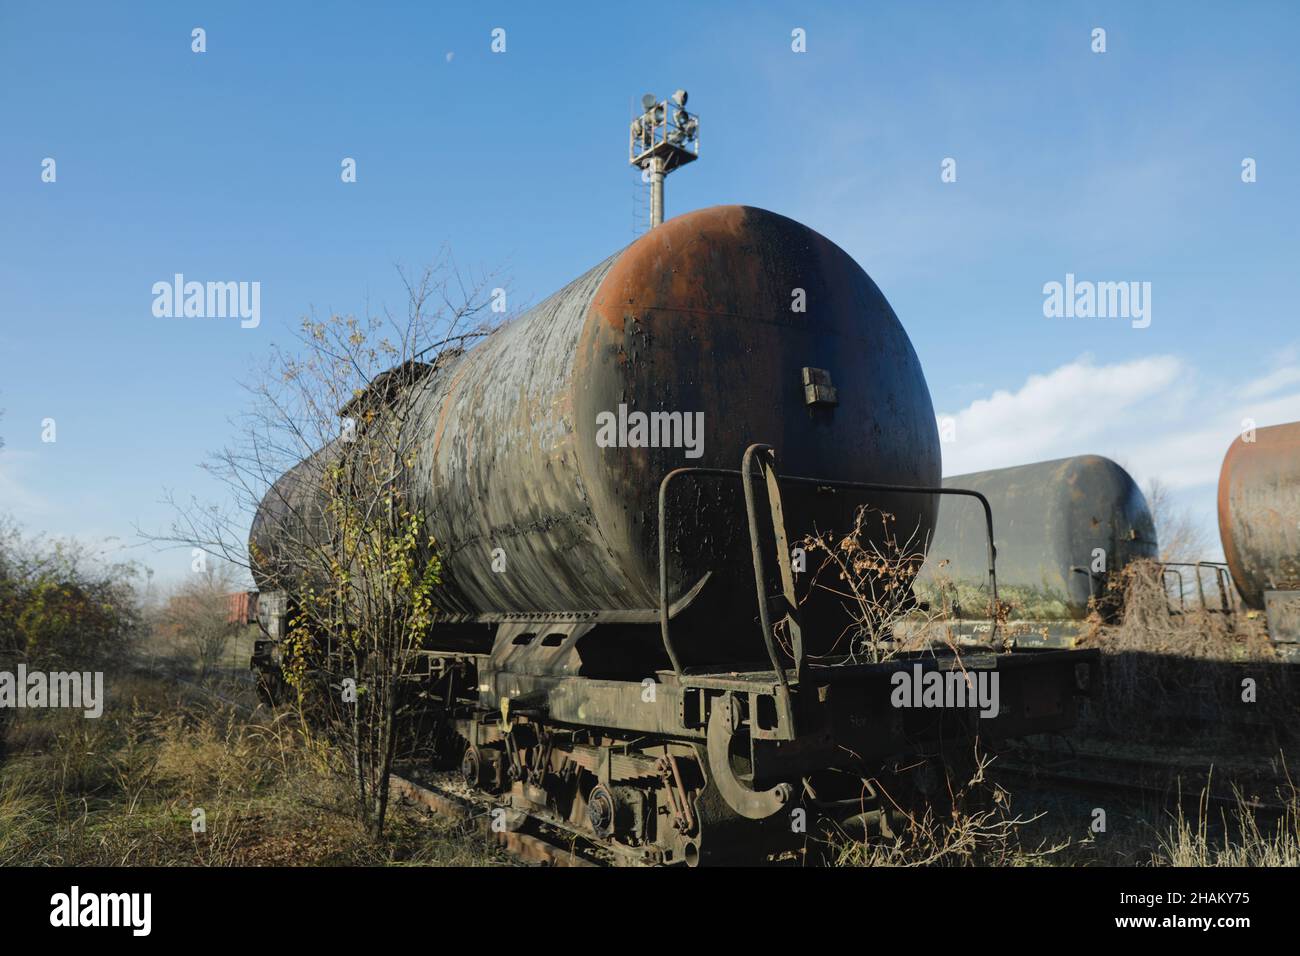 Profondità di campo bassa (fuoco selettivo) immagine con vecchia e arrugginita petroliera ferroviaria nel mezzo di un campo in una giornata invernale soleggiata. Foto Stock